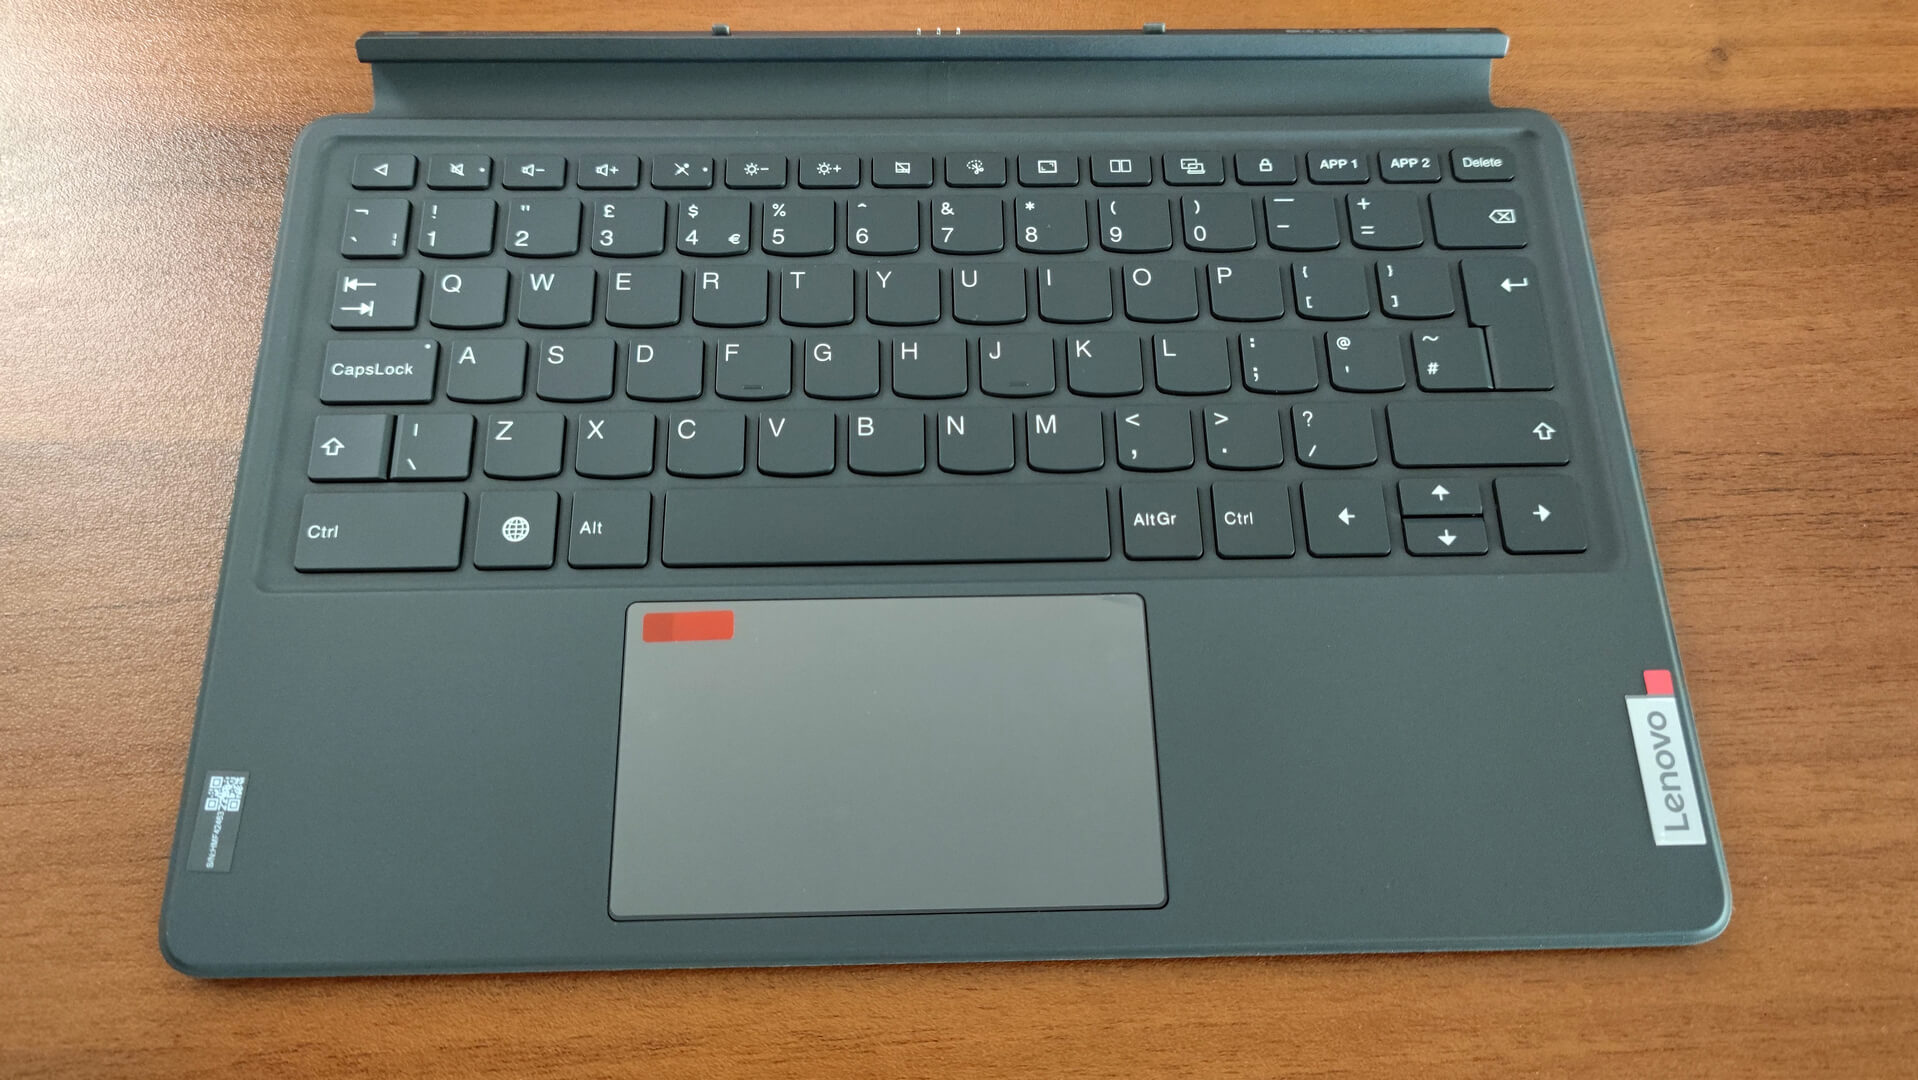 Lenovo tangentbordspaket för Tab P12